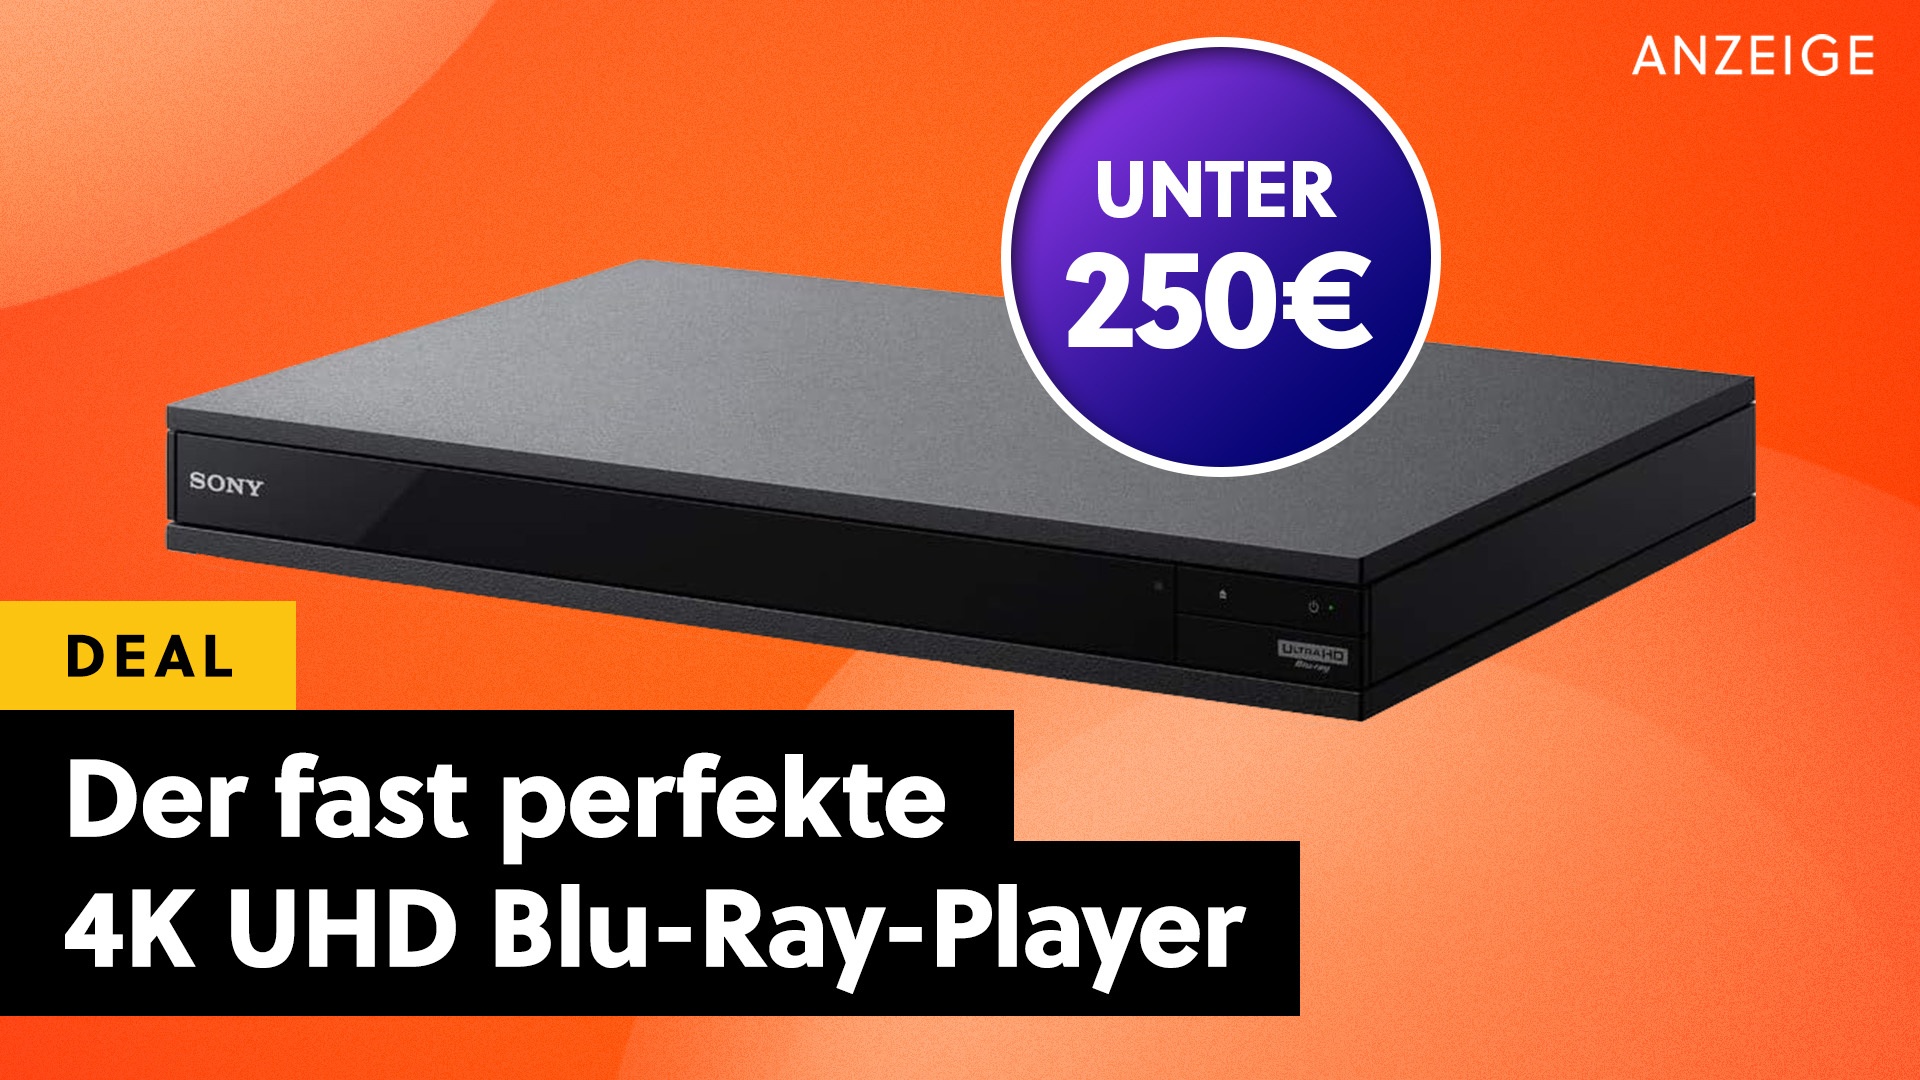 Der beste 4K UHD Blu-Ray-Player mit Dolby Vision und HDR, für den ihr keine Niere verkaufen müsst